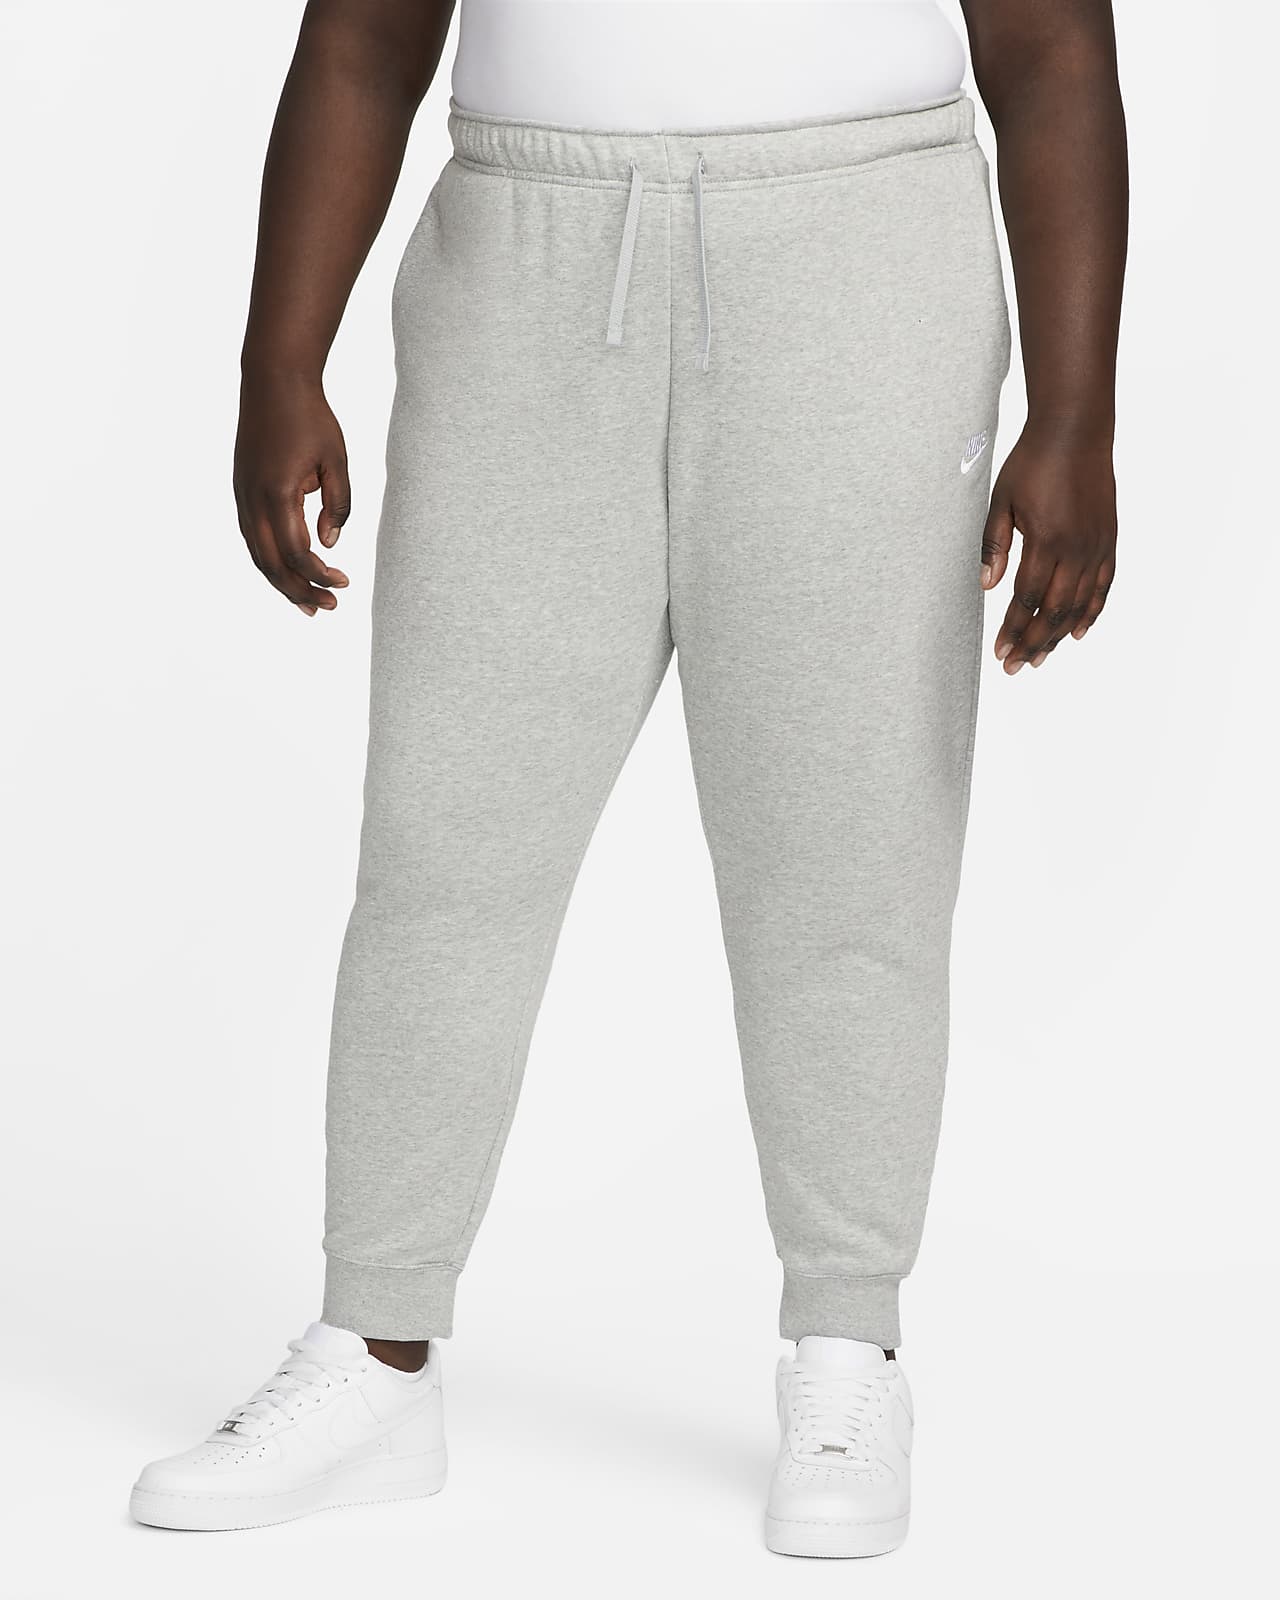 Dámské běžecké kalhoty Nike Sportswear Club Fleece se středně vysokým pasem (větší velikost)